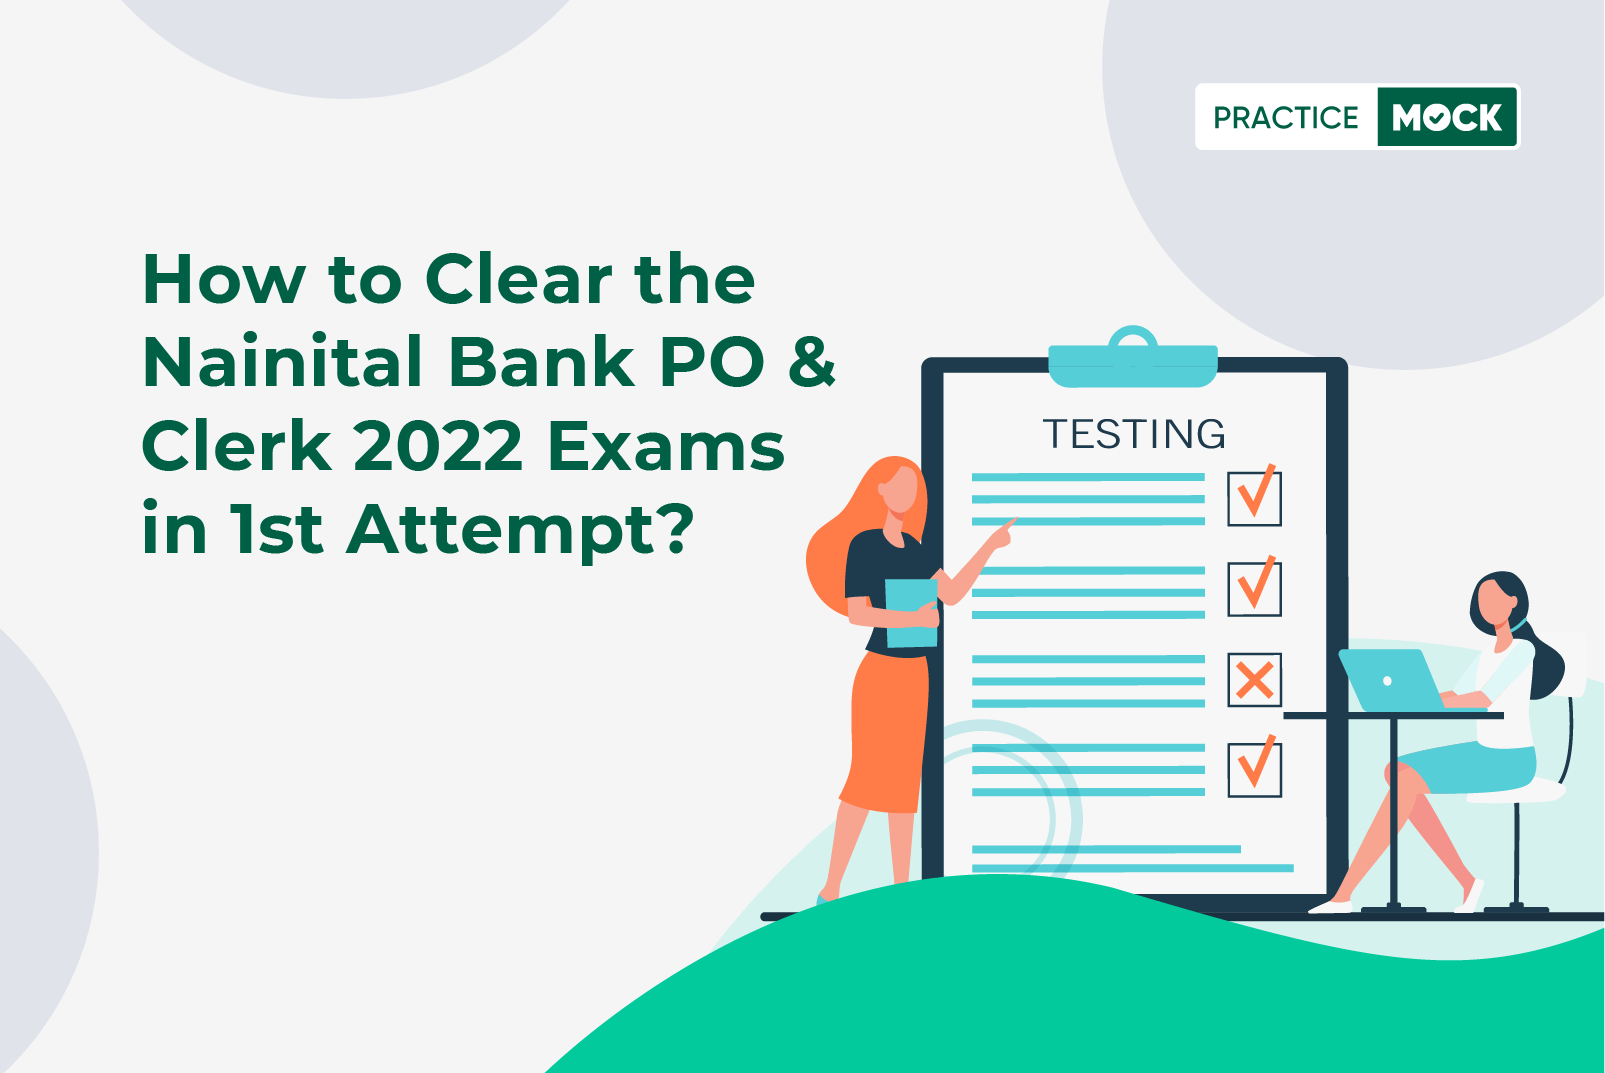 Nainital Bank PO & Clerk 2022 Free Mock Tests